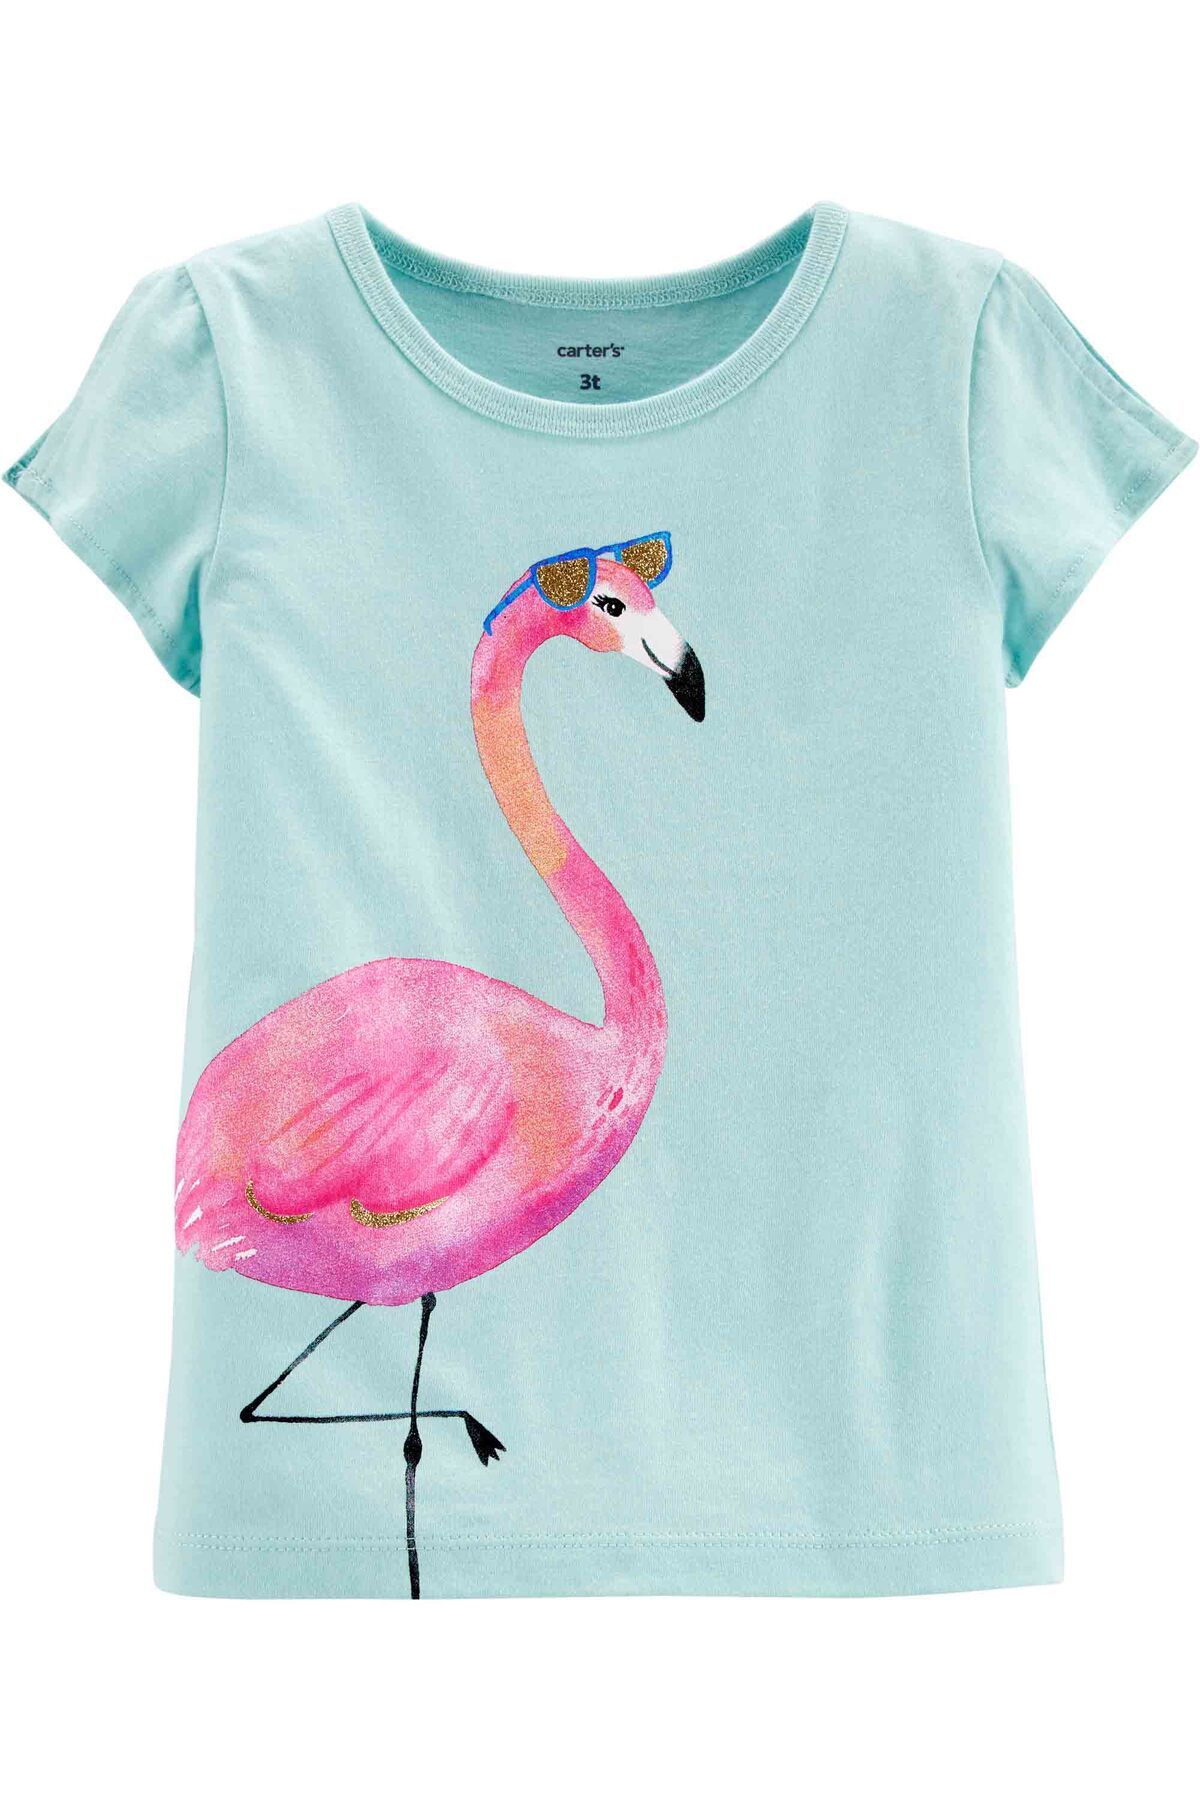 Carter's Kız Çocuk Flamingo Baskılı Kısa Kollu Tişört Mint